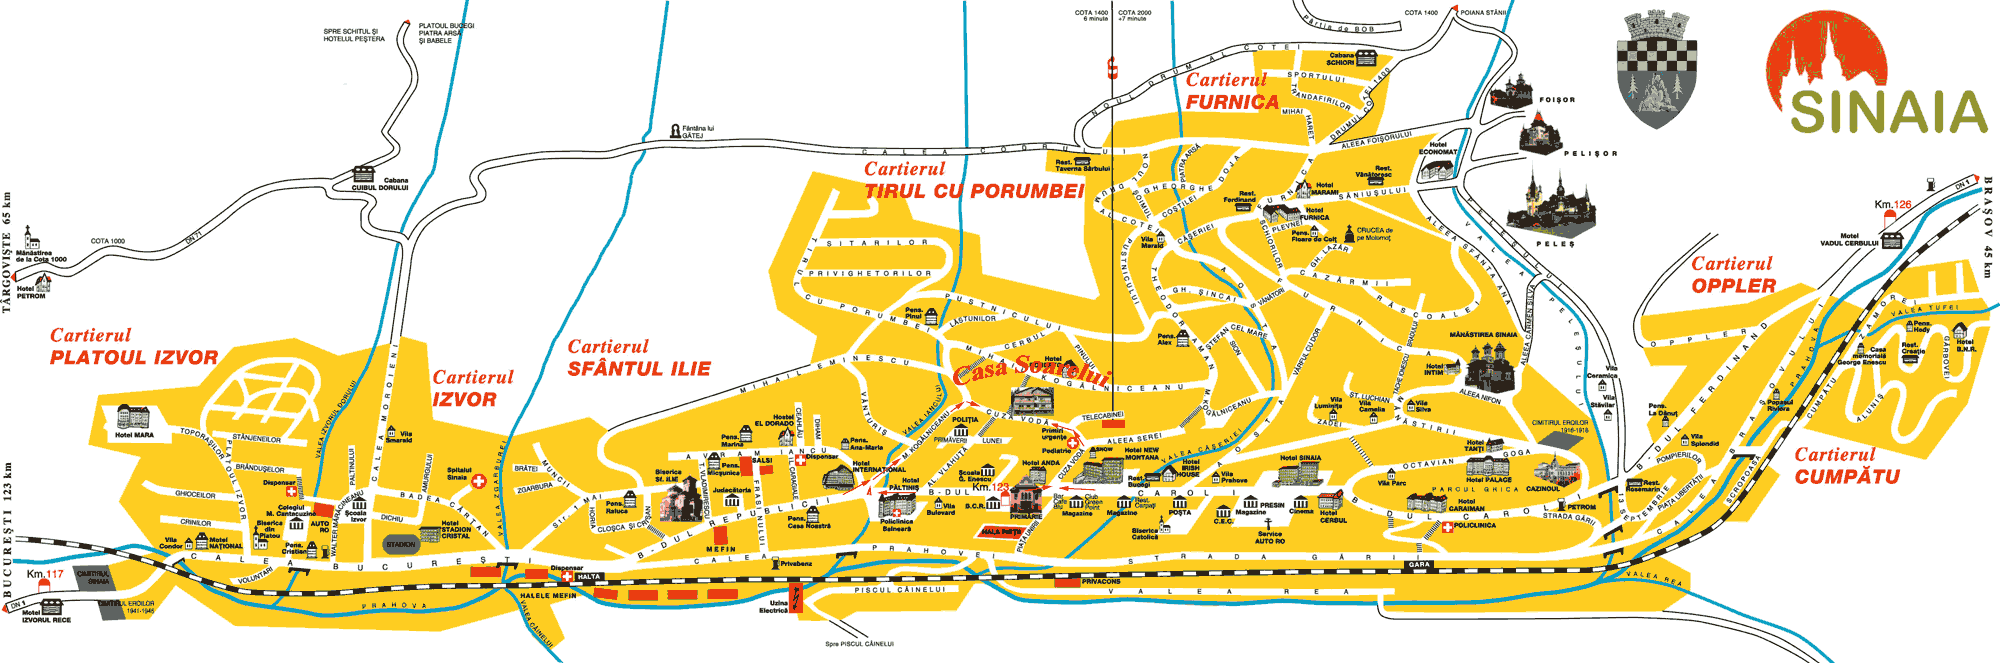 Harta Sinaia - Pensiune 3 Stele Casa Soarelui